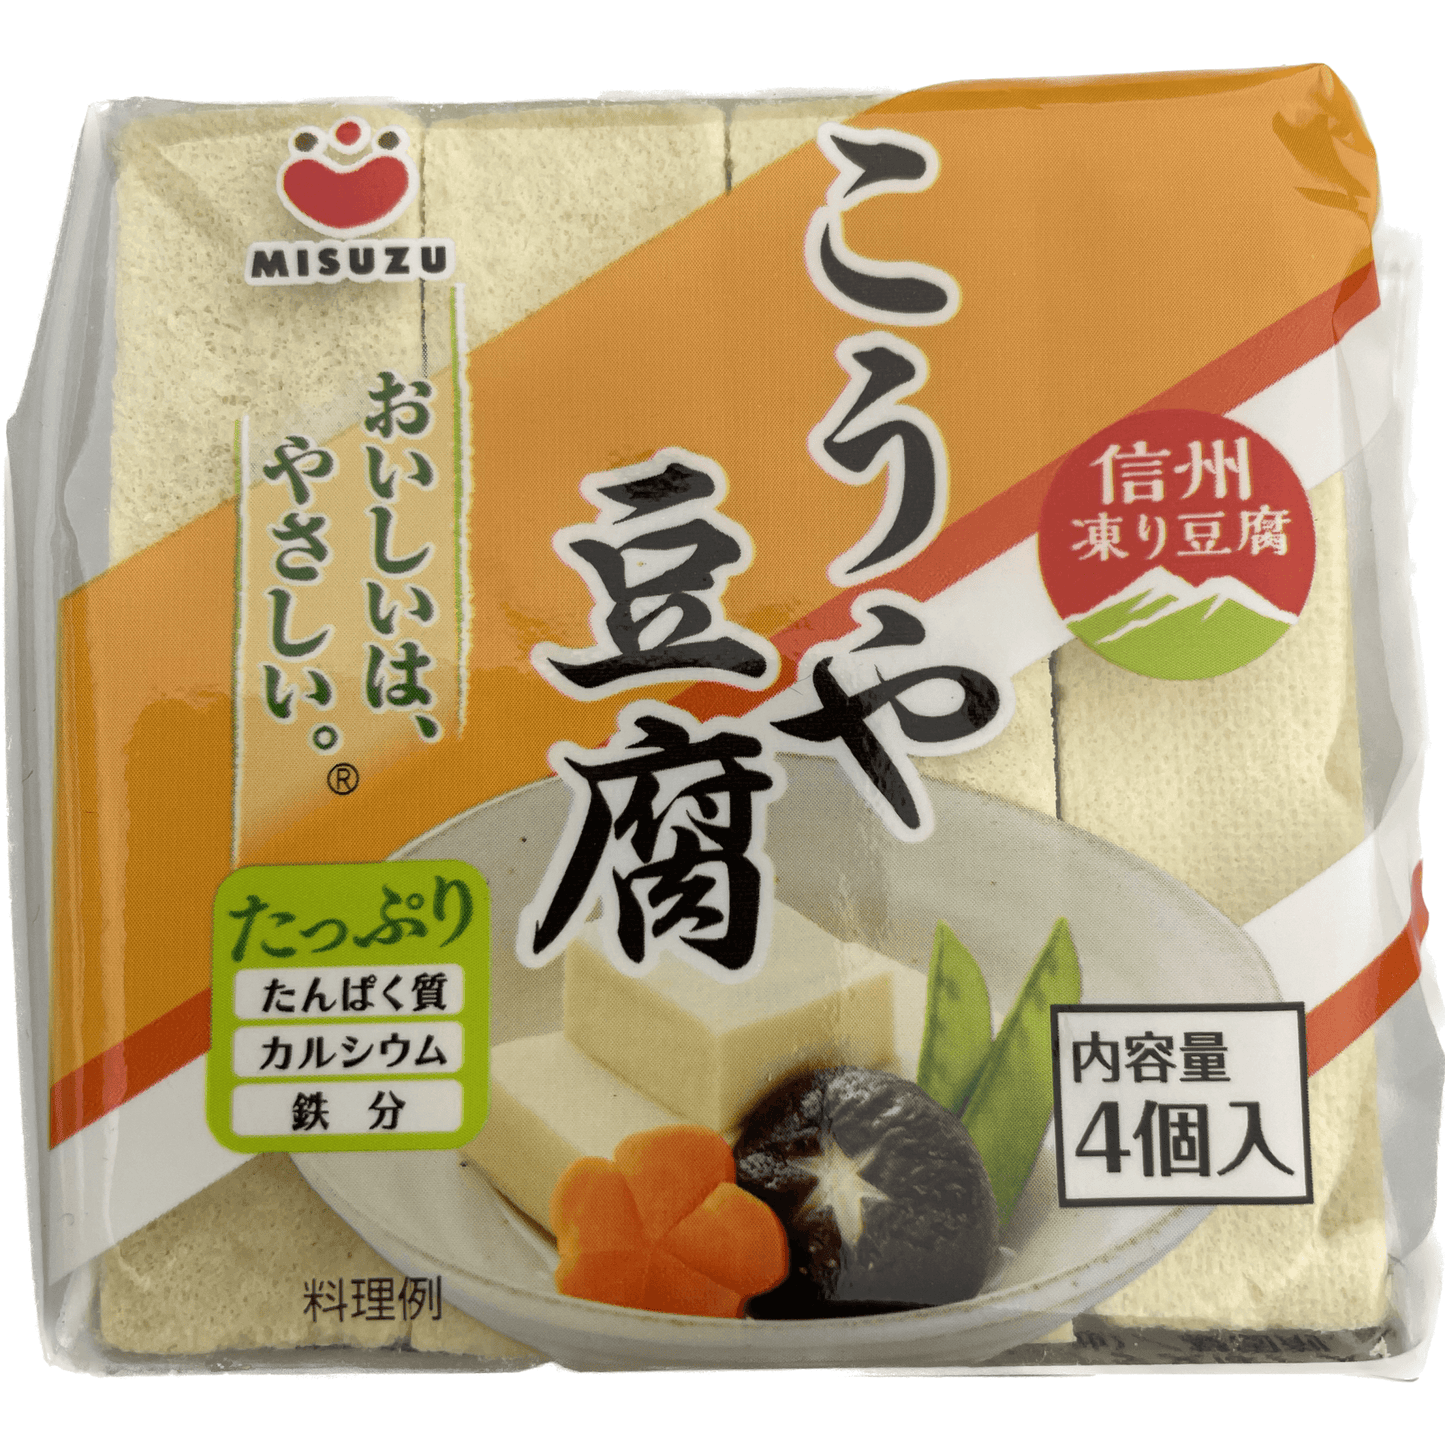 Misuzu Koya Tofu (Kori Tofu) 4 Pieces みすず　こうや豆腐（凍り豆腐）　4個入　 16.5g - RiceWineShop